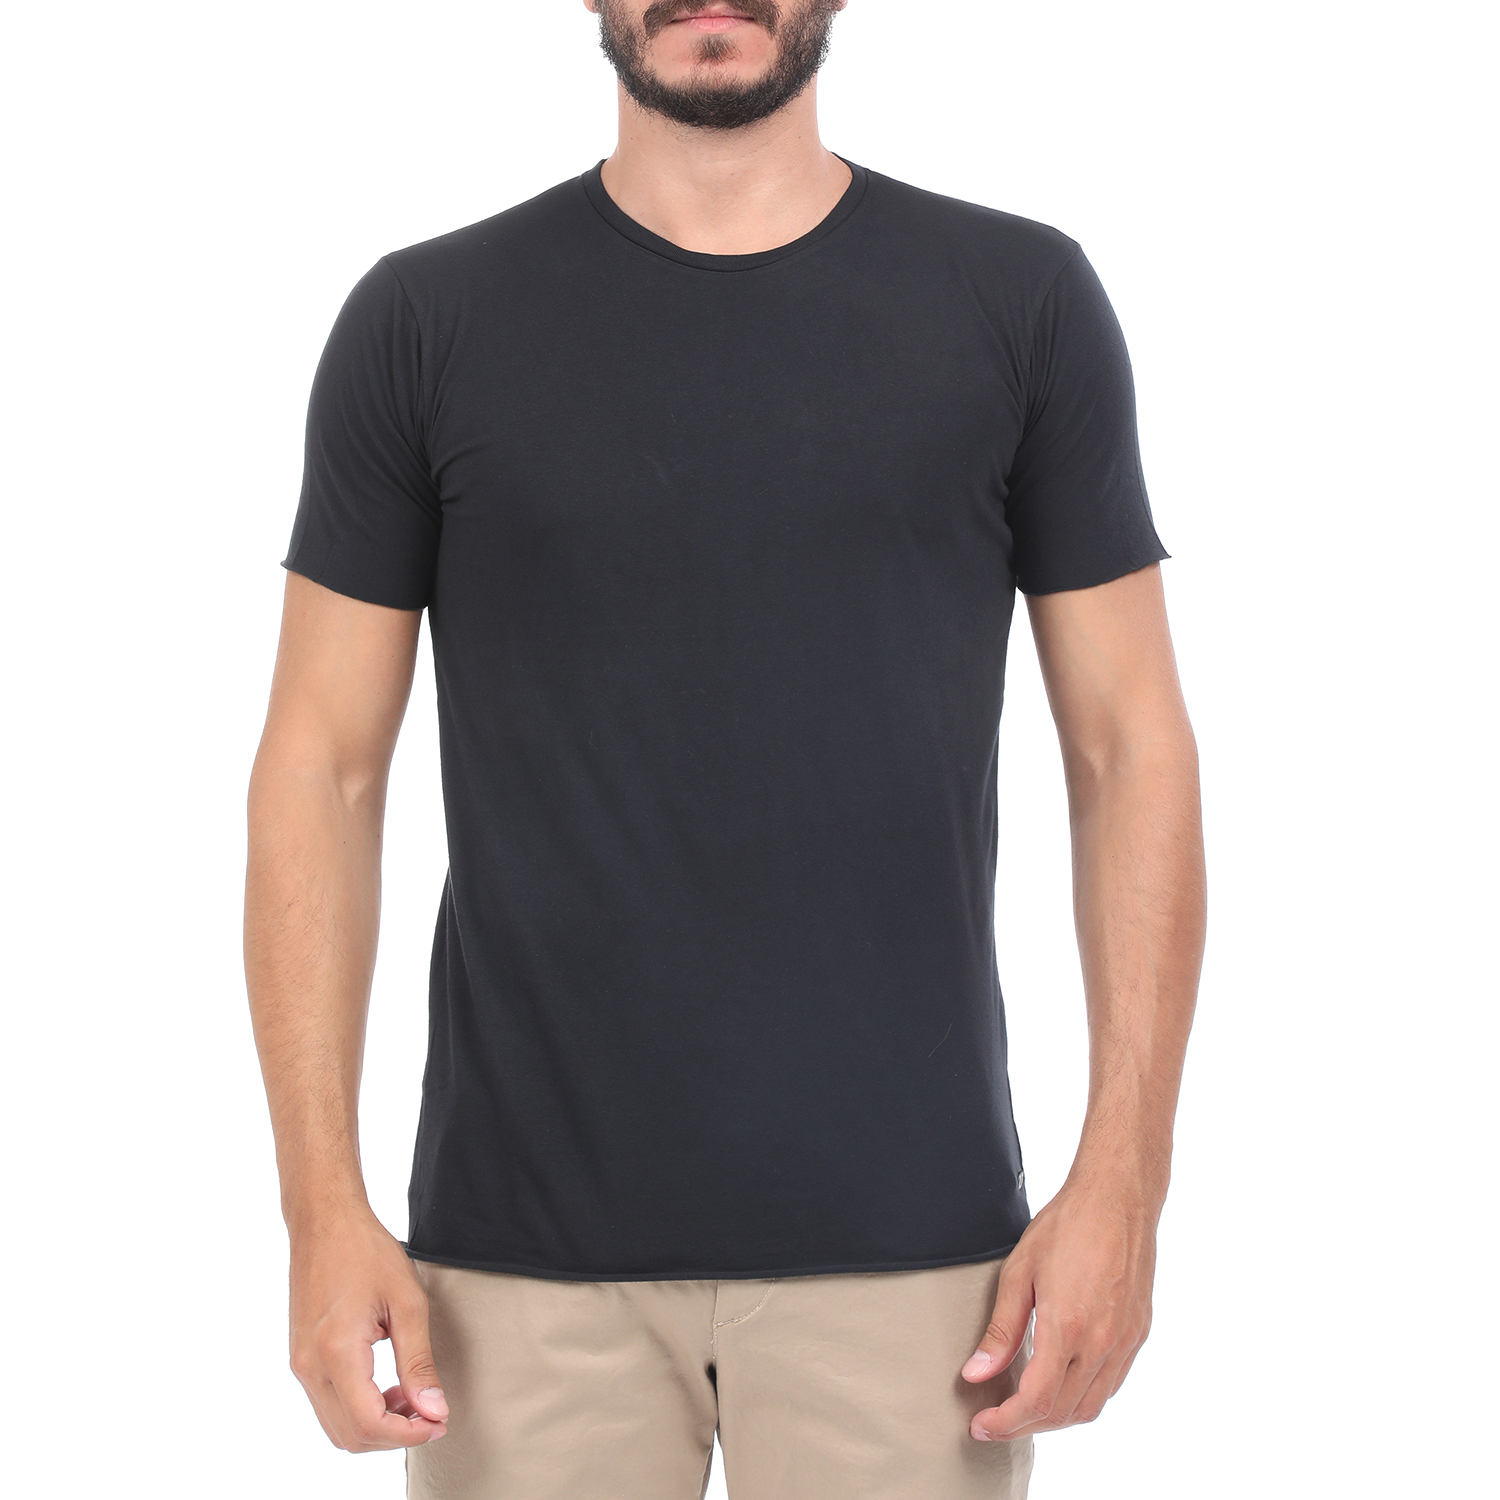 Ανδρικά/Ρούχα/Μπλούζες/Κοντομάνικες BATTERY - Ανδρική μπλούζα BATTERY SOLID 2 GARMENT DYΕ μαύρη